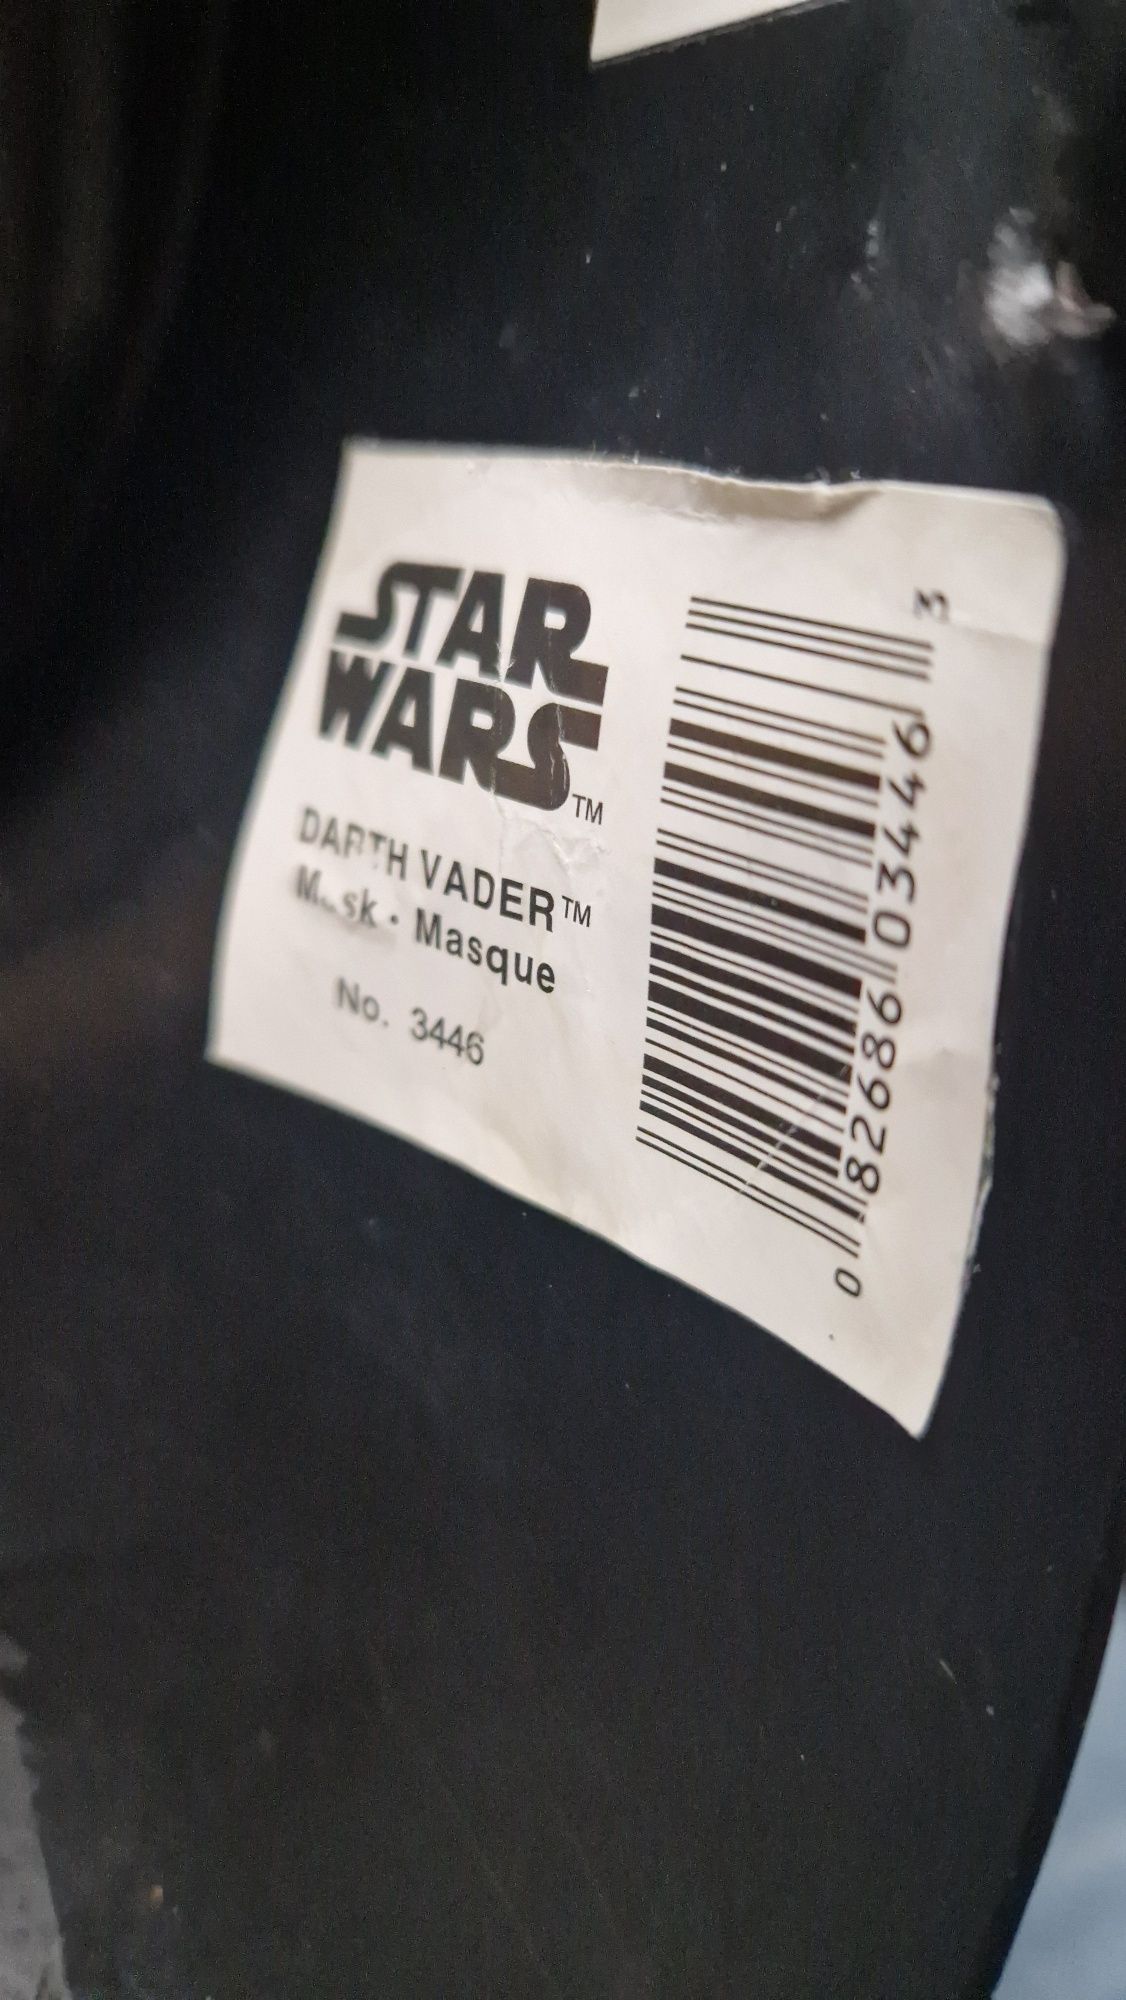 Masca Star wars Darth Vader